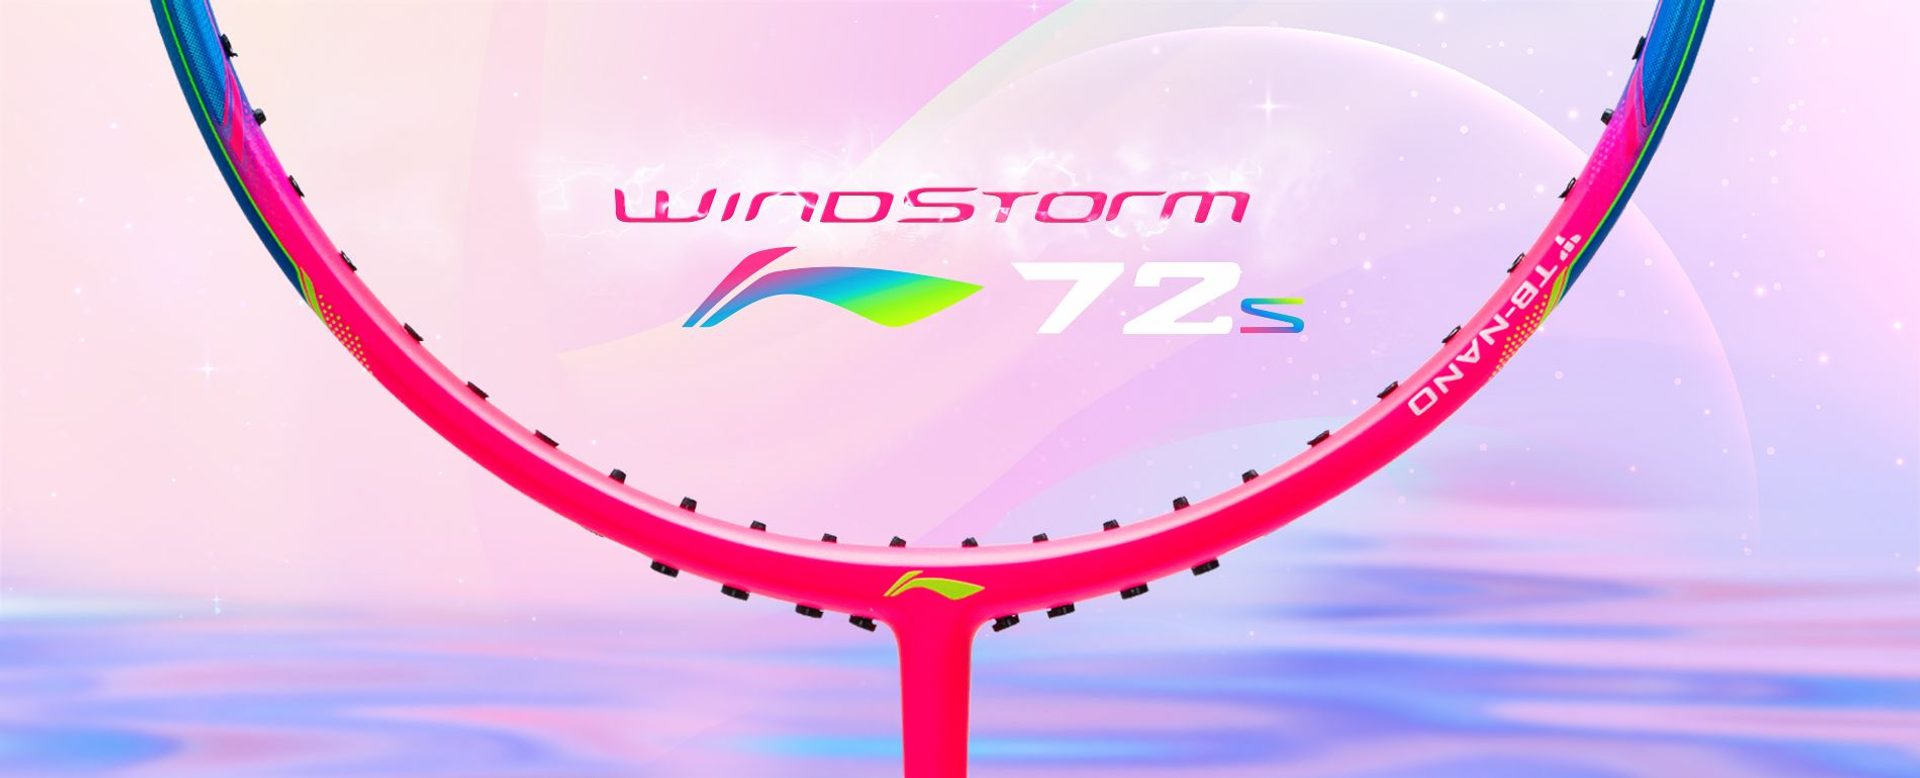 Windstorm 72S Badminton Racket - Category Banner